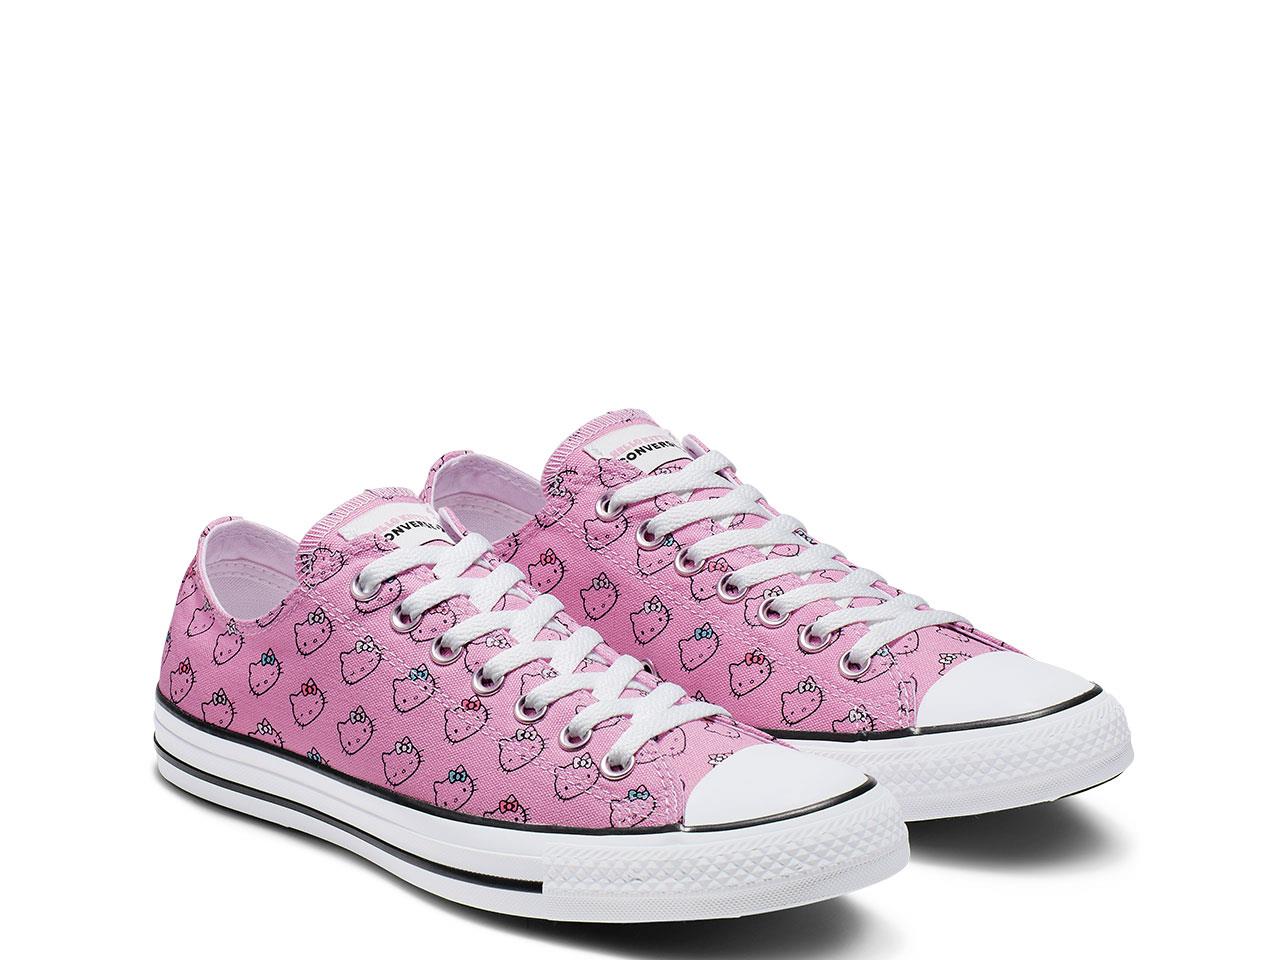 converse zapatillas Chuck Taylor All Star Low Top de Converse x Hello Kitty, 29,99€ (antes 70,00€) 